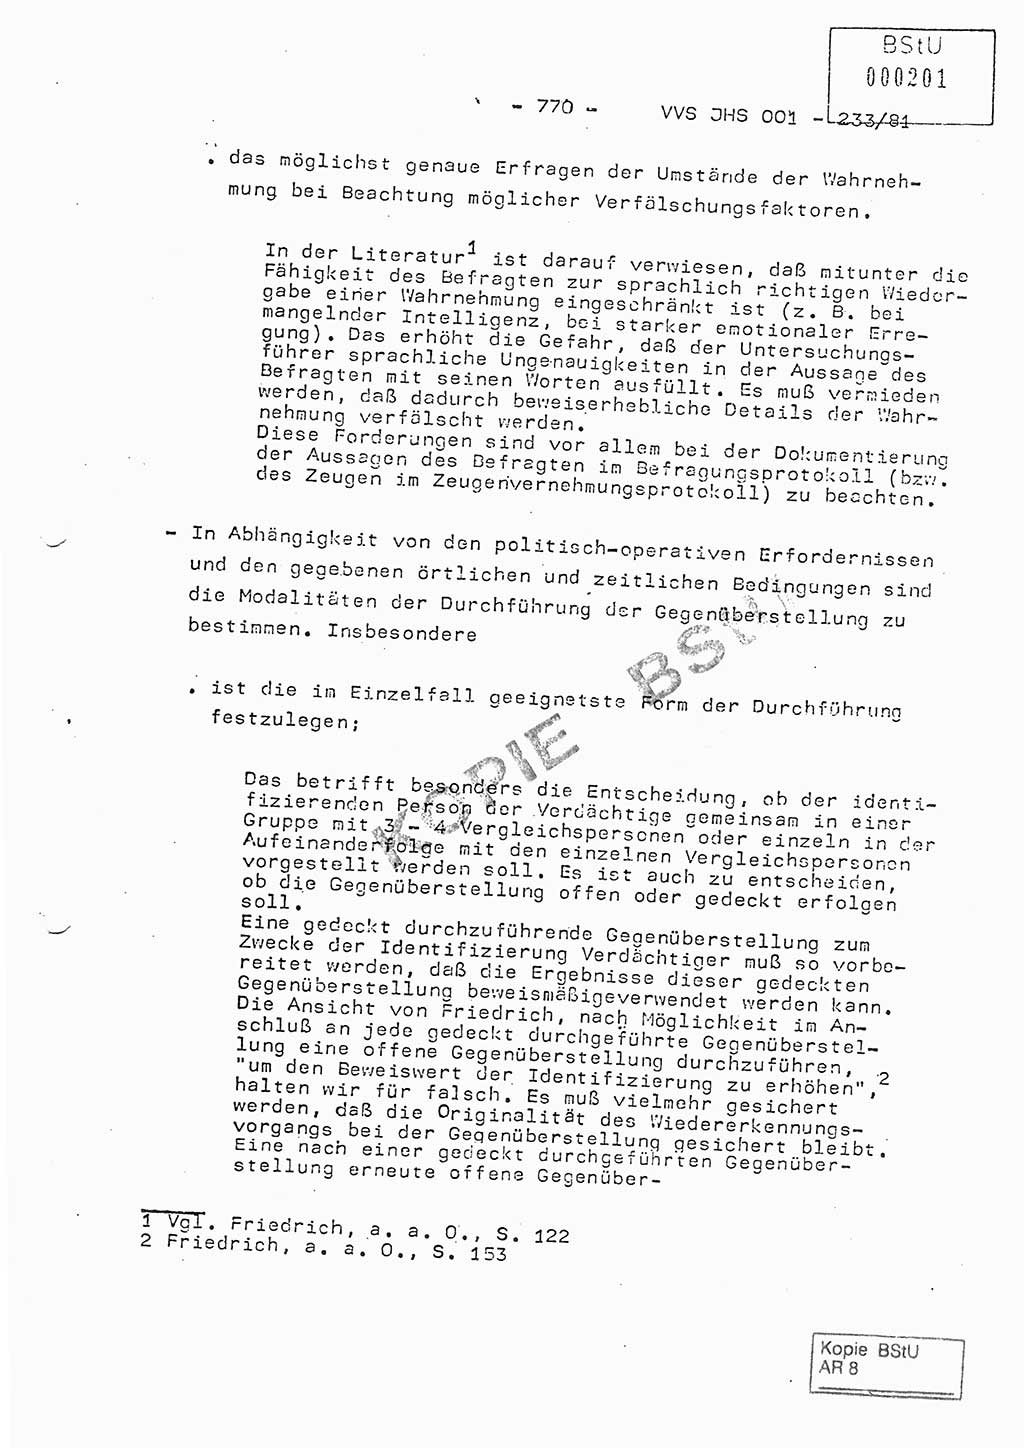 Dissertation Oberstleutnant Horst Zank (JHS), Oberstleutnant Dr. Karl-Heinz Knoblauch (JHS), Oberstleutnant Gustav-Adolf Kowalewski (HA Ⅸ), Oberstleutnant Wolfgang Plötner (HA Ⅸ), Ministerium für Staatssicherheit (MfS) [Deutsche Demokratische Republik (DDR)], Juristische Hochschule (JHS), Vertrauliche Verschlußsache (VVS) o001-233/81, Potsdam 1981, Blatt 770 (Diss. MfS DDR JHS VVS o001-233/81 1981, Bl. 770)